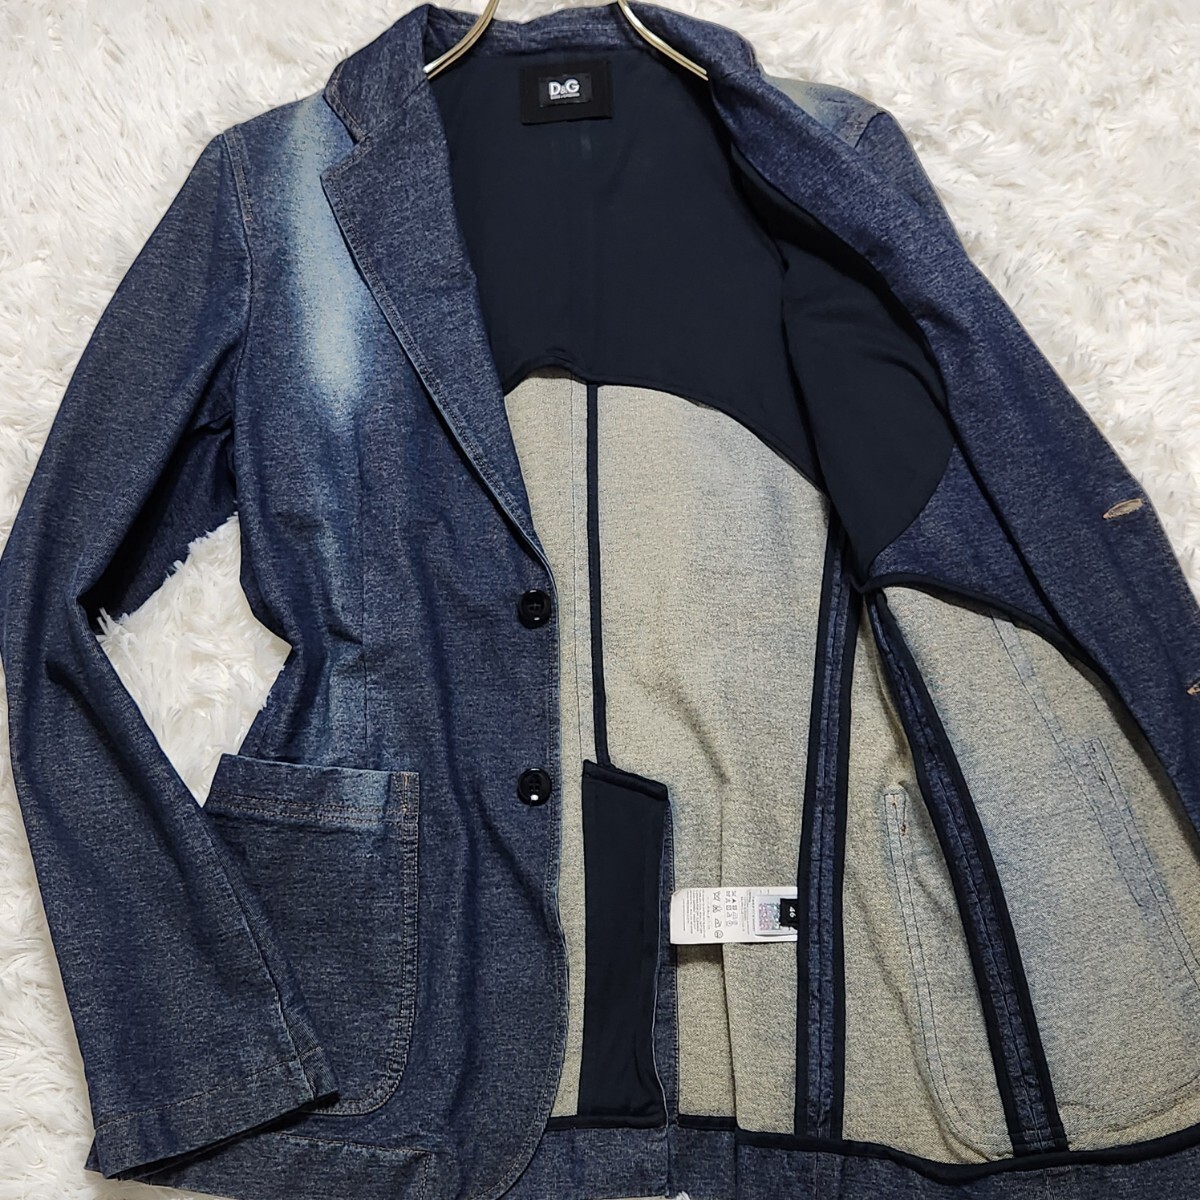  превосходный товар редкий L соответствует DOLCE&GABBANA Dolce & Gabbana tailored jacket Anne темно синий Denim стрейч индиго голубой осветлитель обработка 